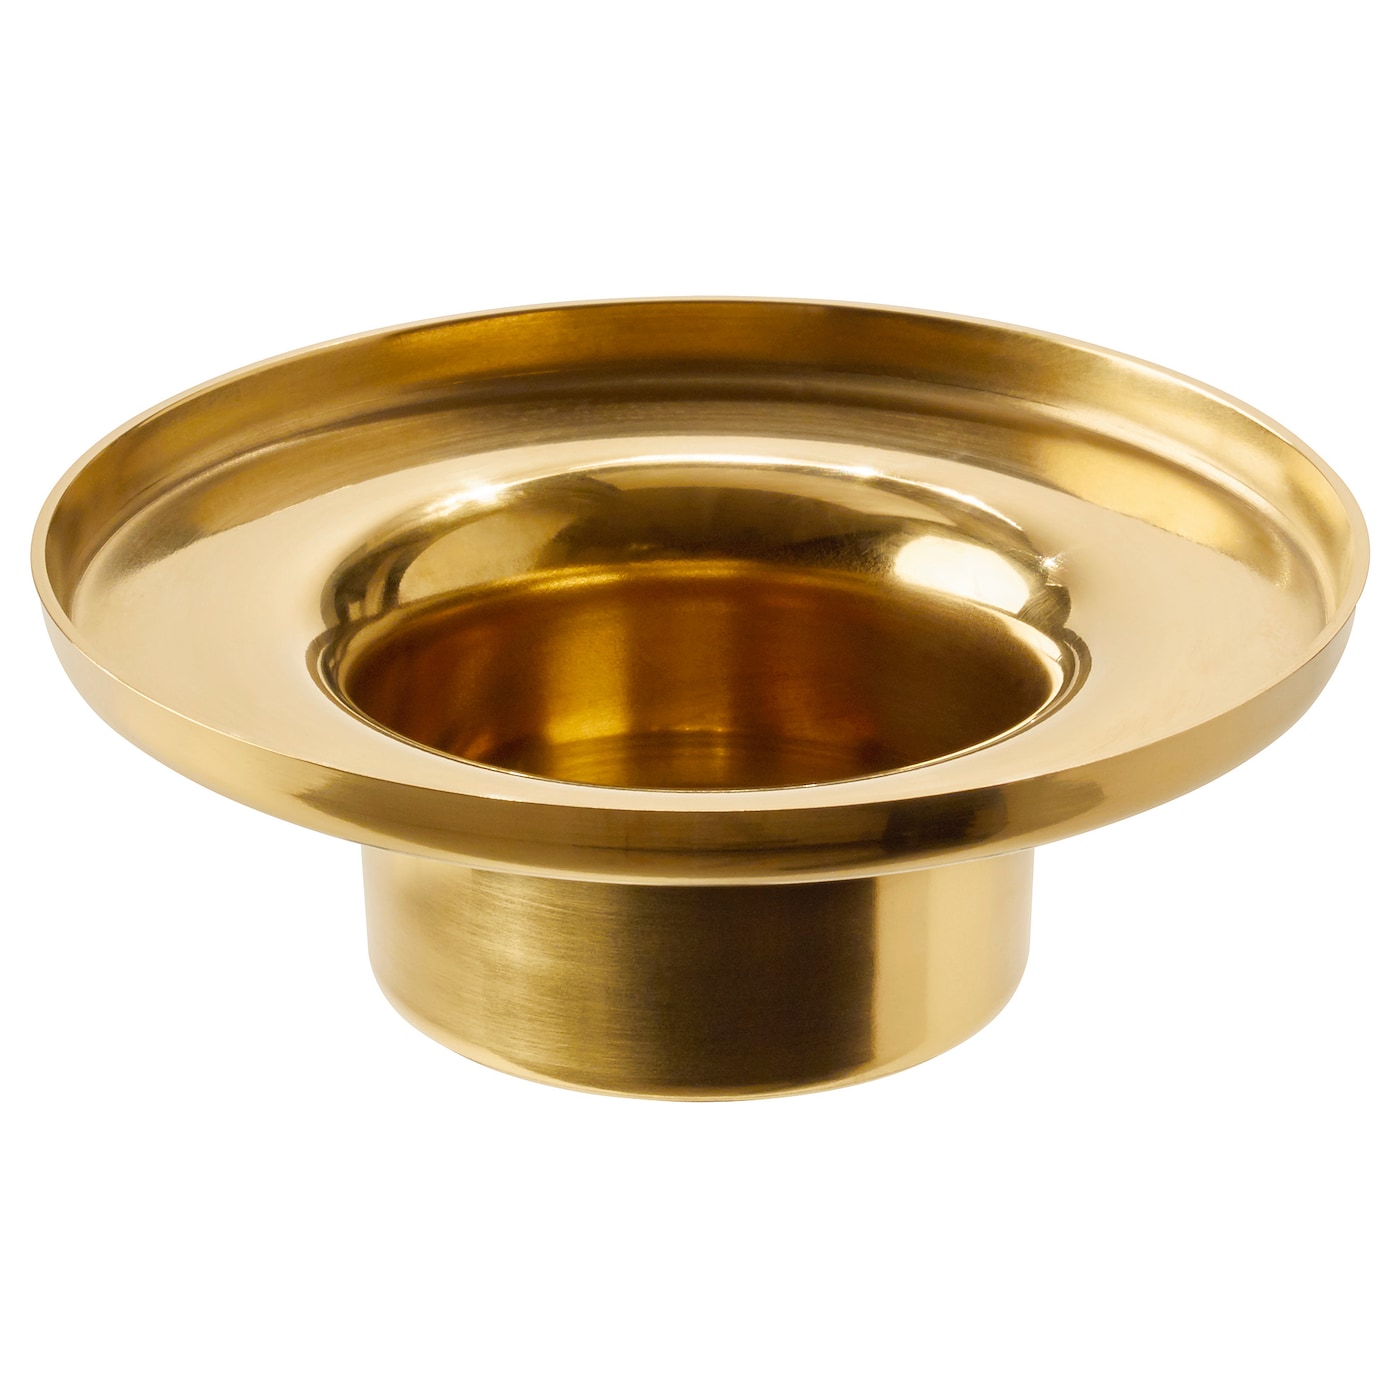 Złoty metalowy świecznik na tealight, wypożyczalnia dekoracji